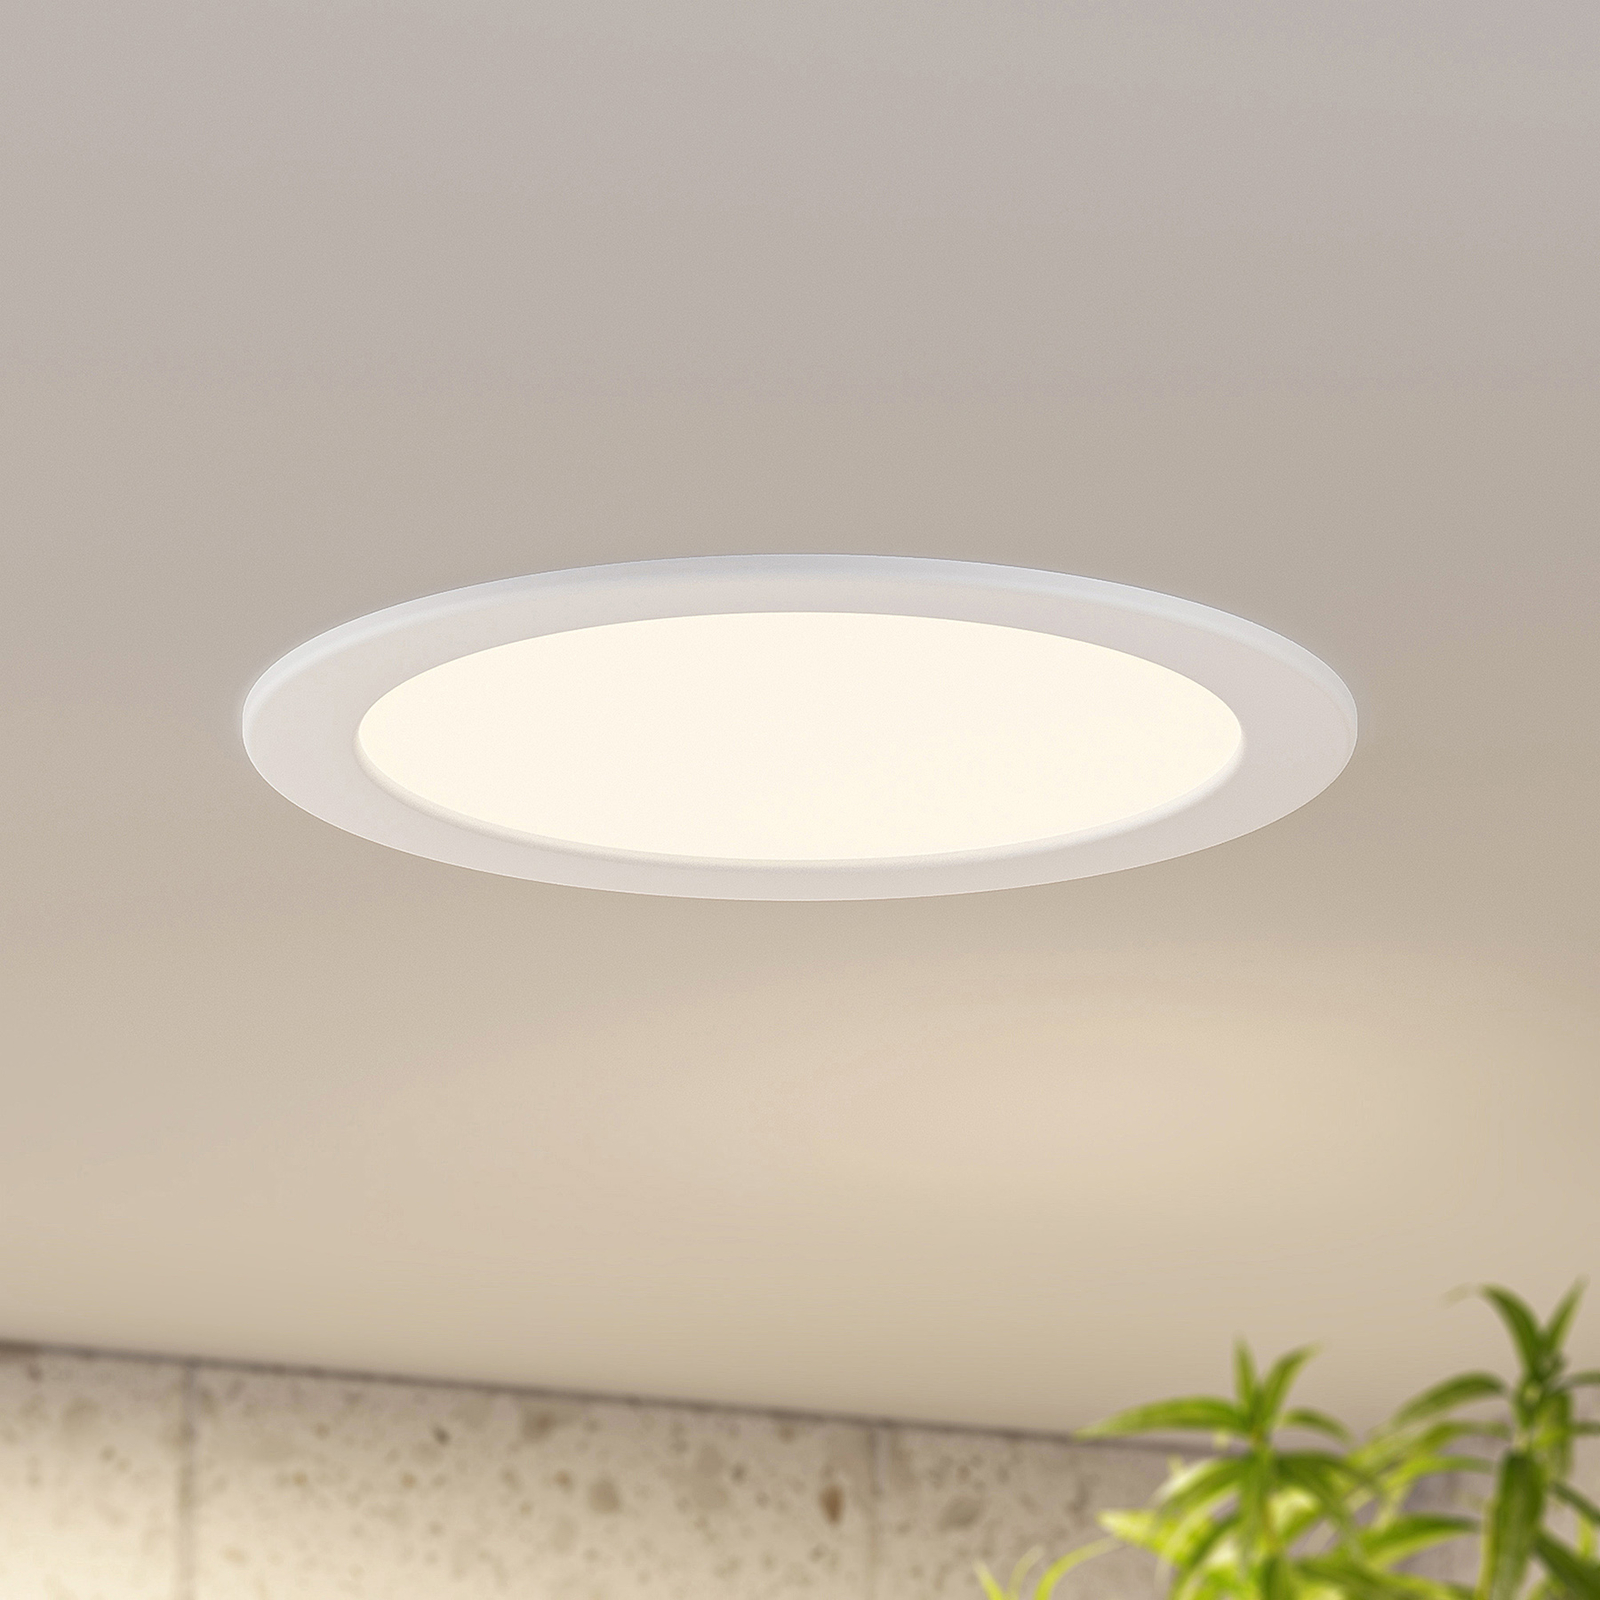 Prios lampe encastrable LED Cadance, blanc, 24 cm, lot de 3, intensité